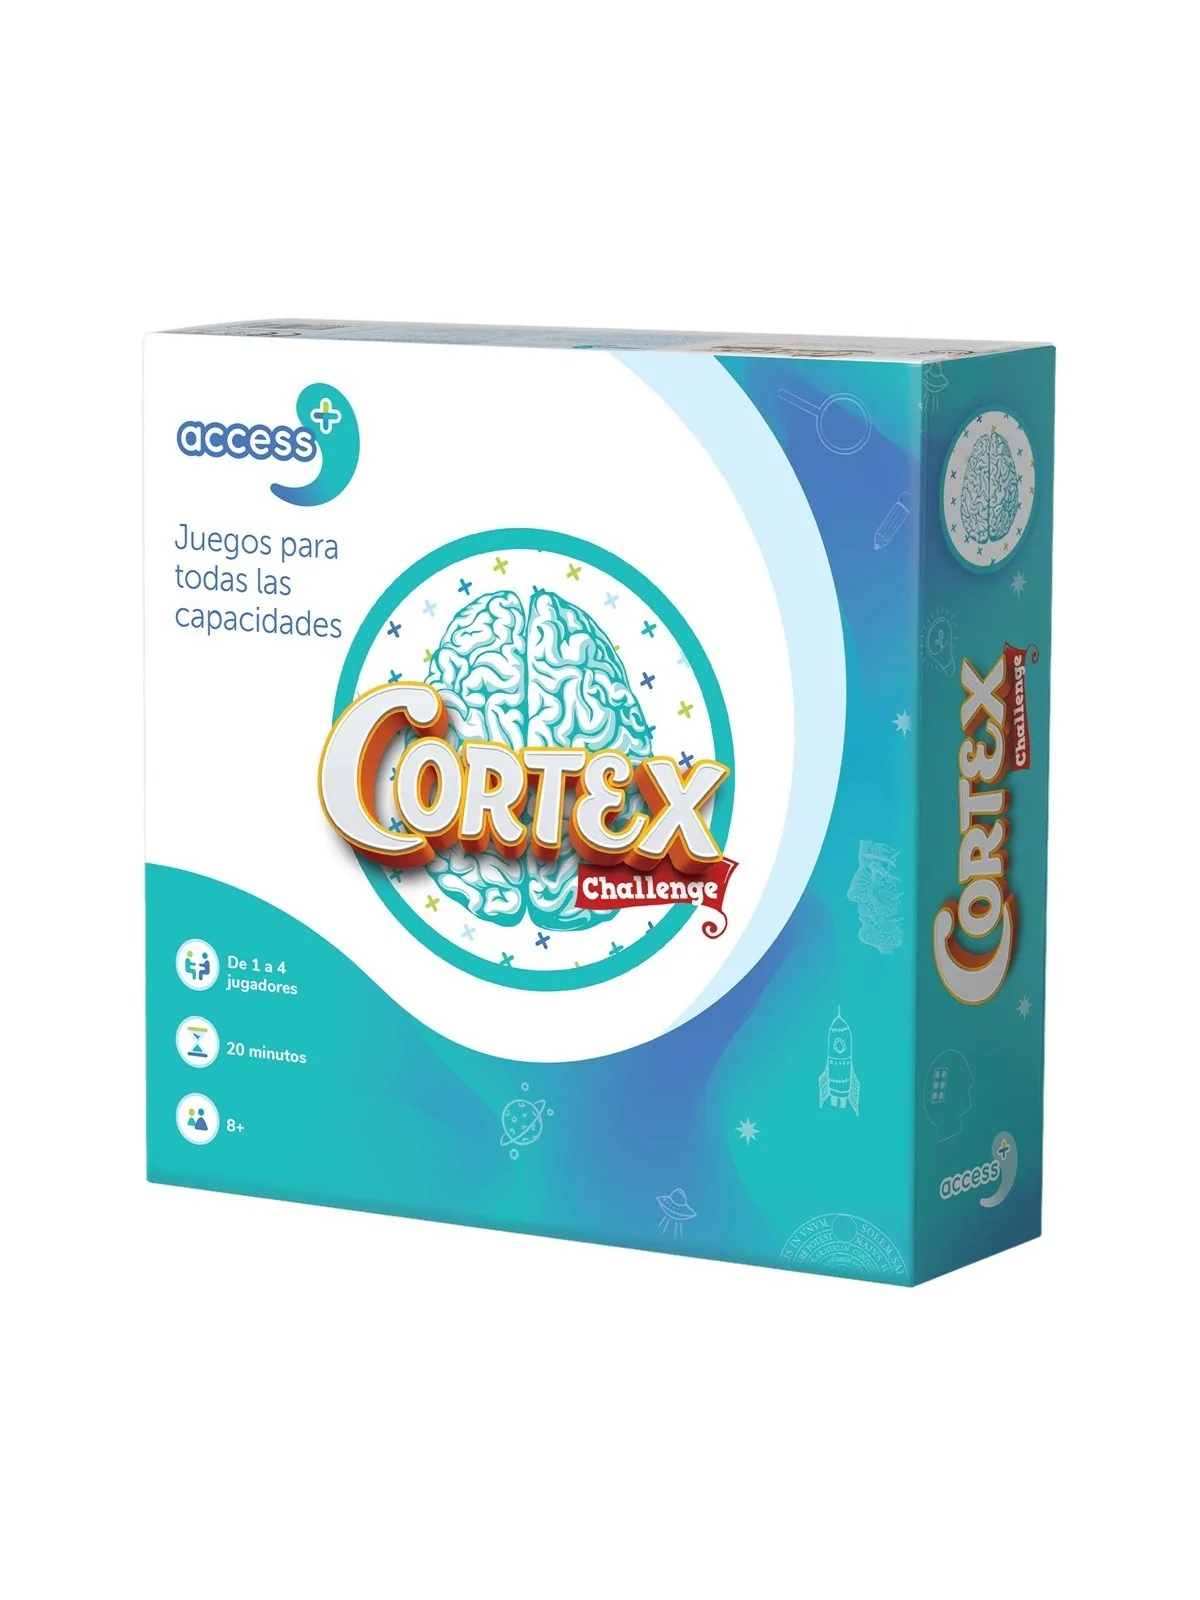 Comprar Cortex Access+ barato al mejor precio 21,24 € de Juegos